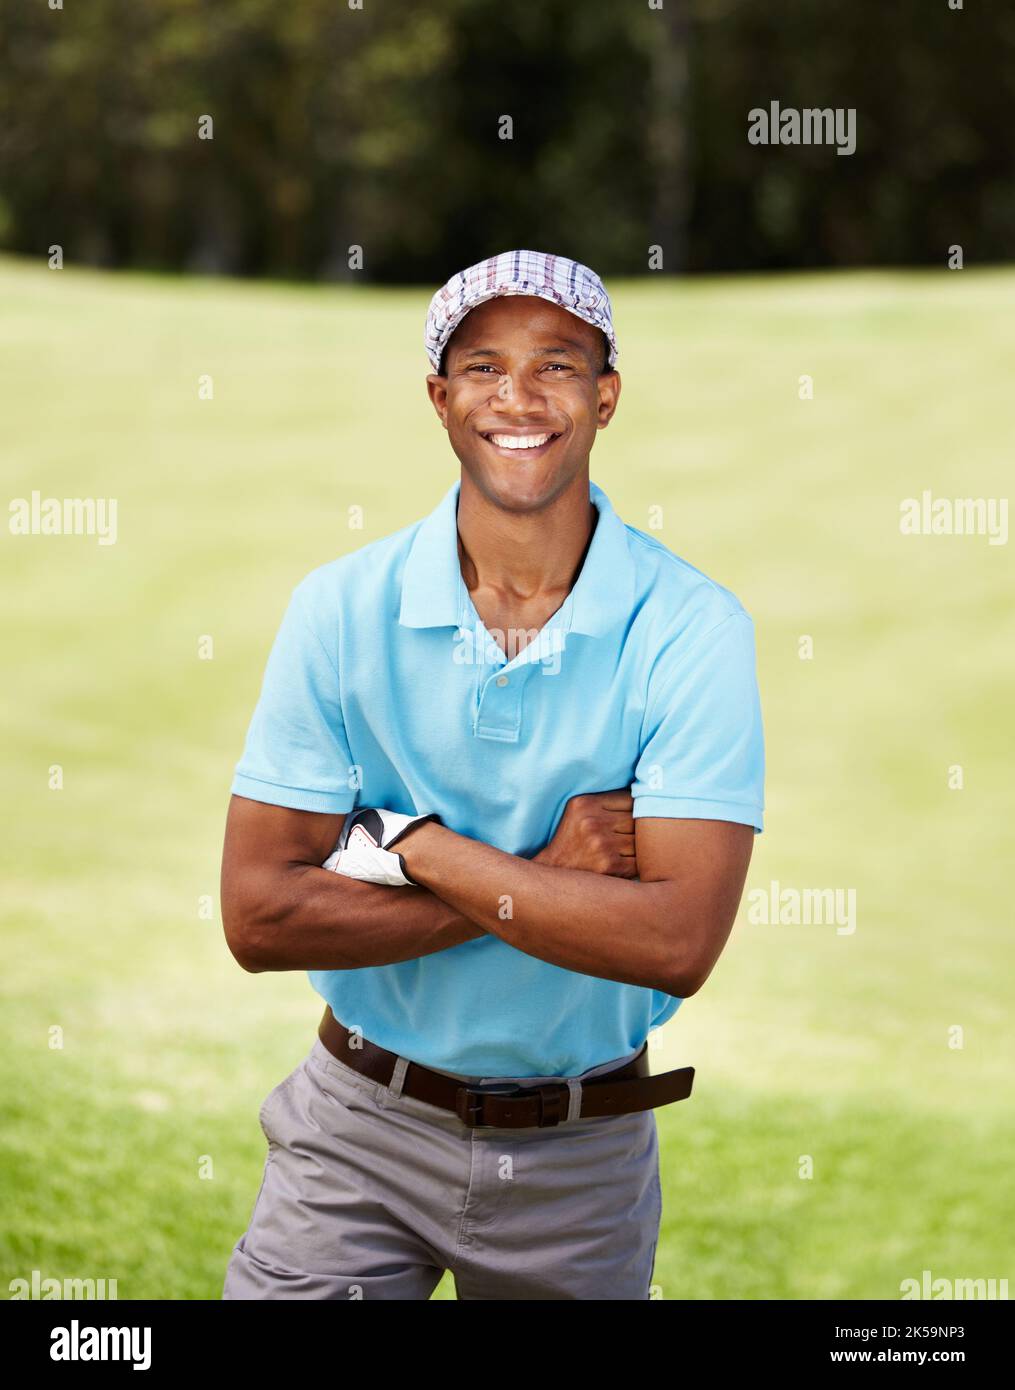 Zu Hause auf dem Platz. Porträt eines jungen afroamerikanischen Golfprofis. Stockfoto